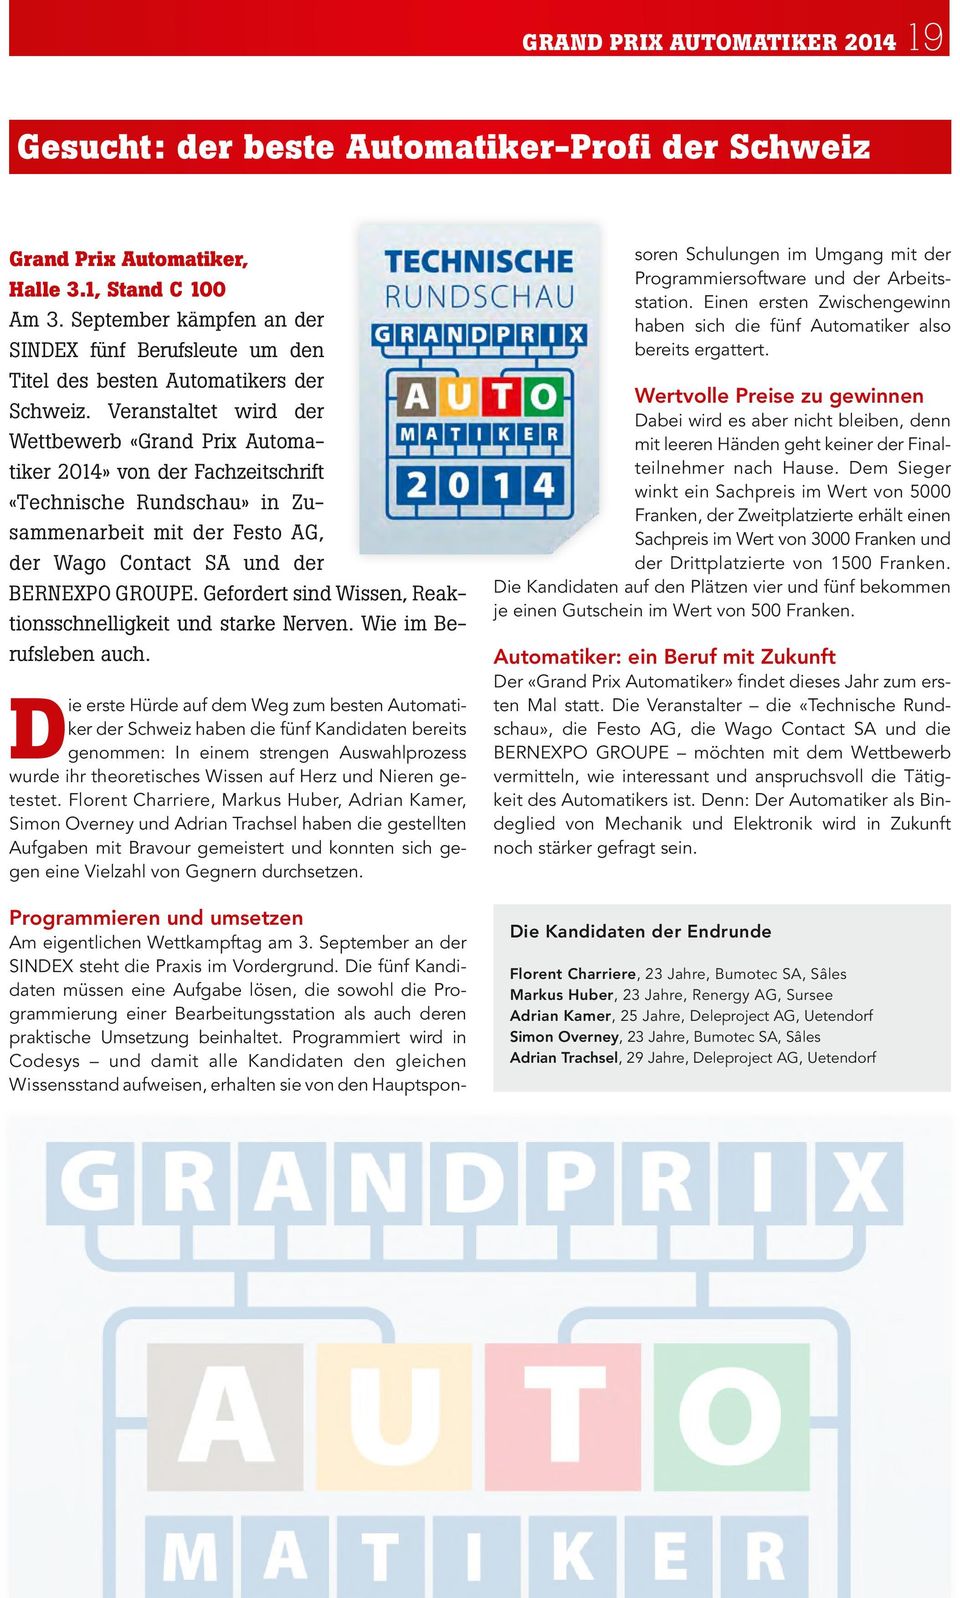 Veranstaltet wird der Wettbewerb «Grand Prix Automatiker 2014» von der Fachzeitschrift «Technische Rundschau» in Zusammenarbeit mit der Festo AG, der Wago Contact SA und der BERNEXPO GROUPE.